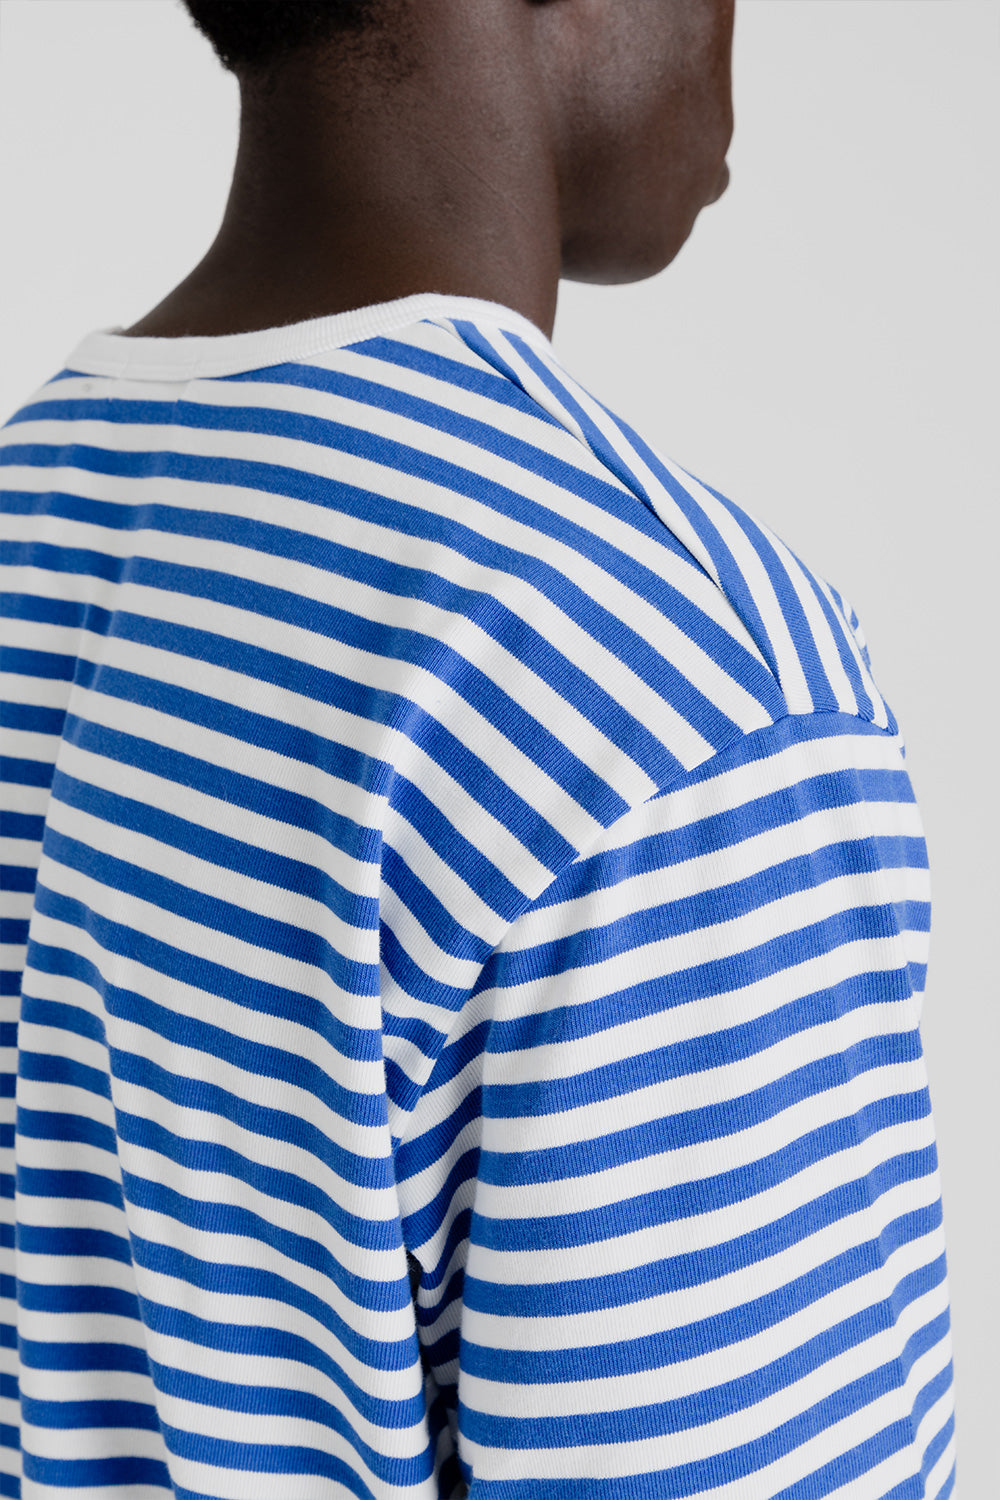     Nanamica_coolmax_jersey-stripes-ls-royal-blue-white